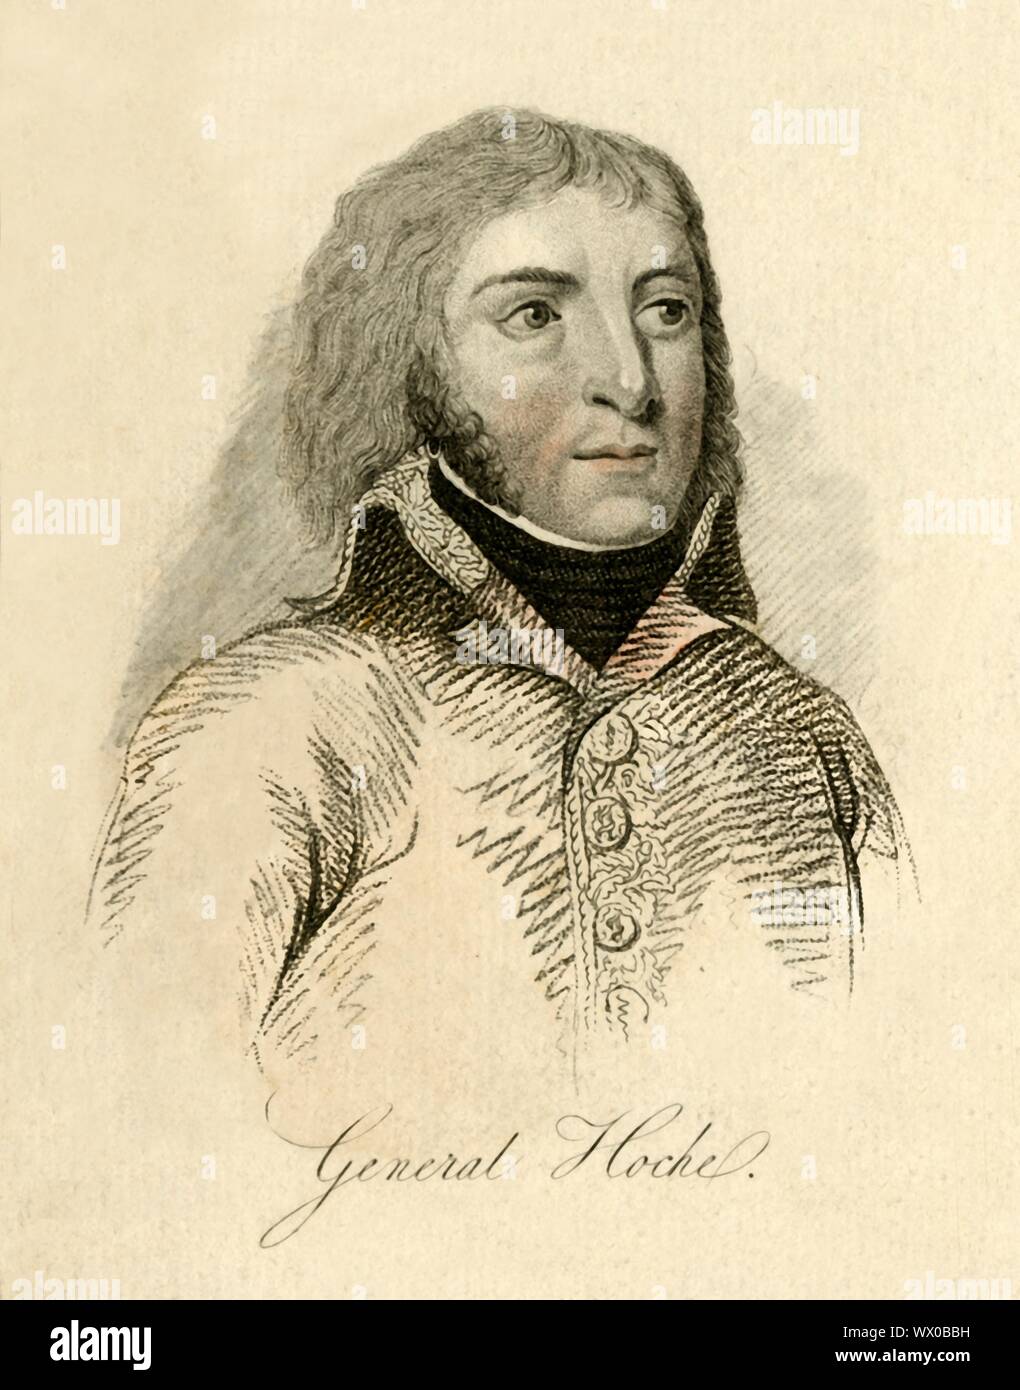 'Général Hoche", fin du xviiie siècle, (1807). Portrait de soldat français Louis Lazare Hoche (1768-1797). [M. Jones, Juillet 1807] Banque D'Images